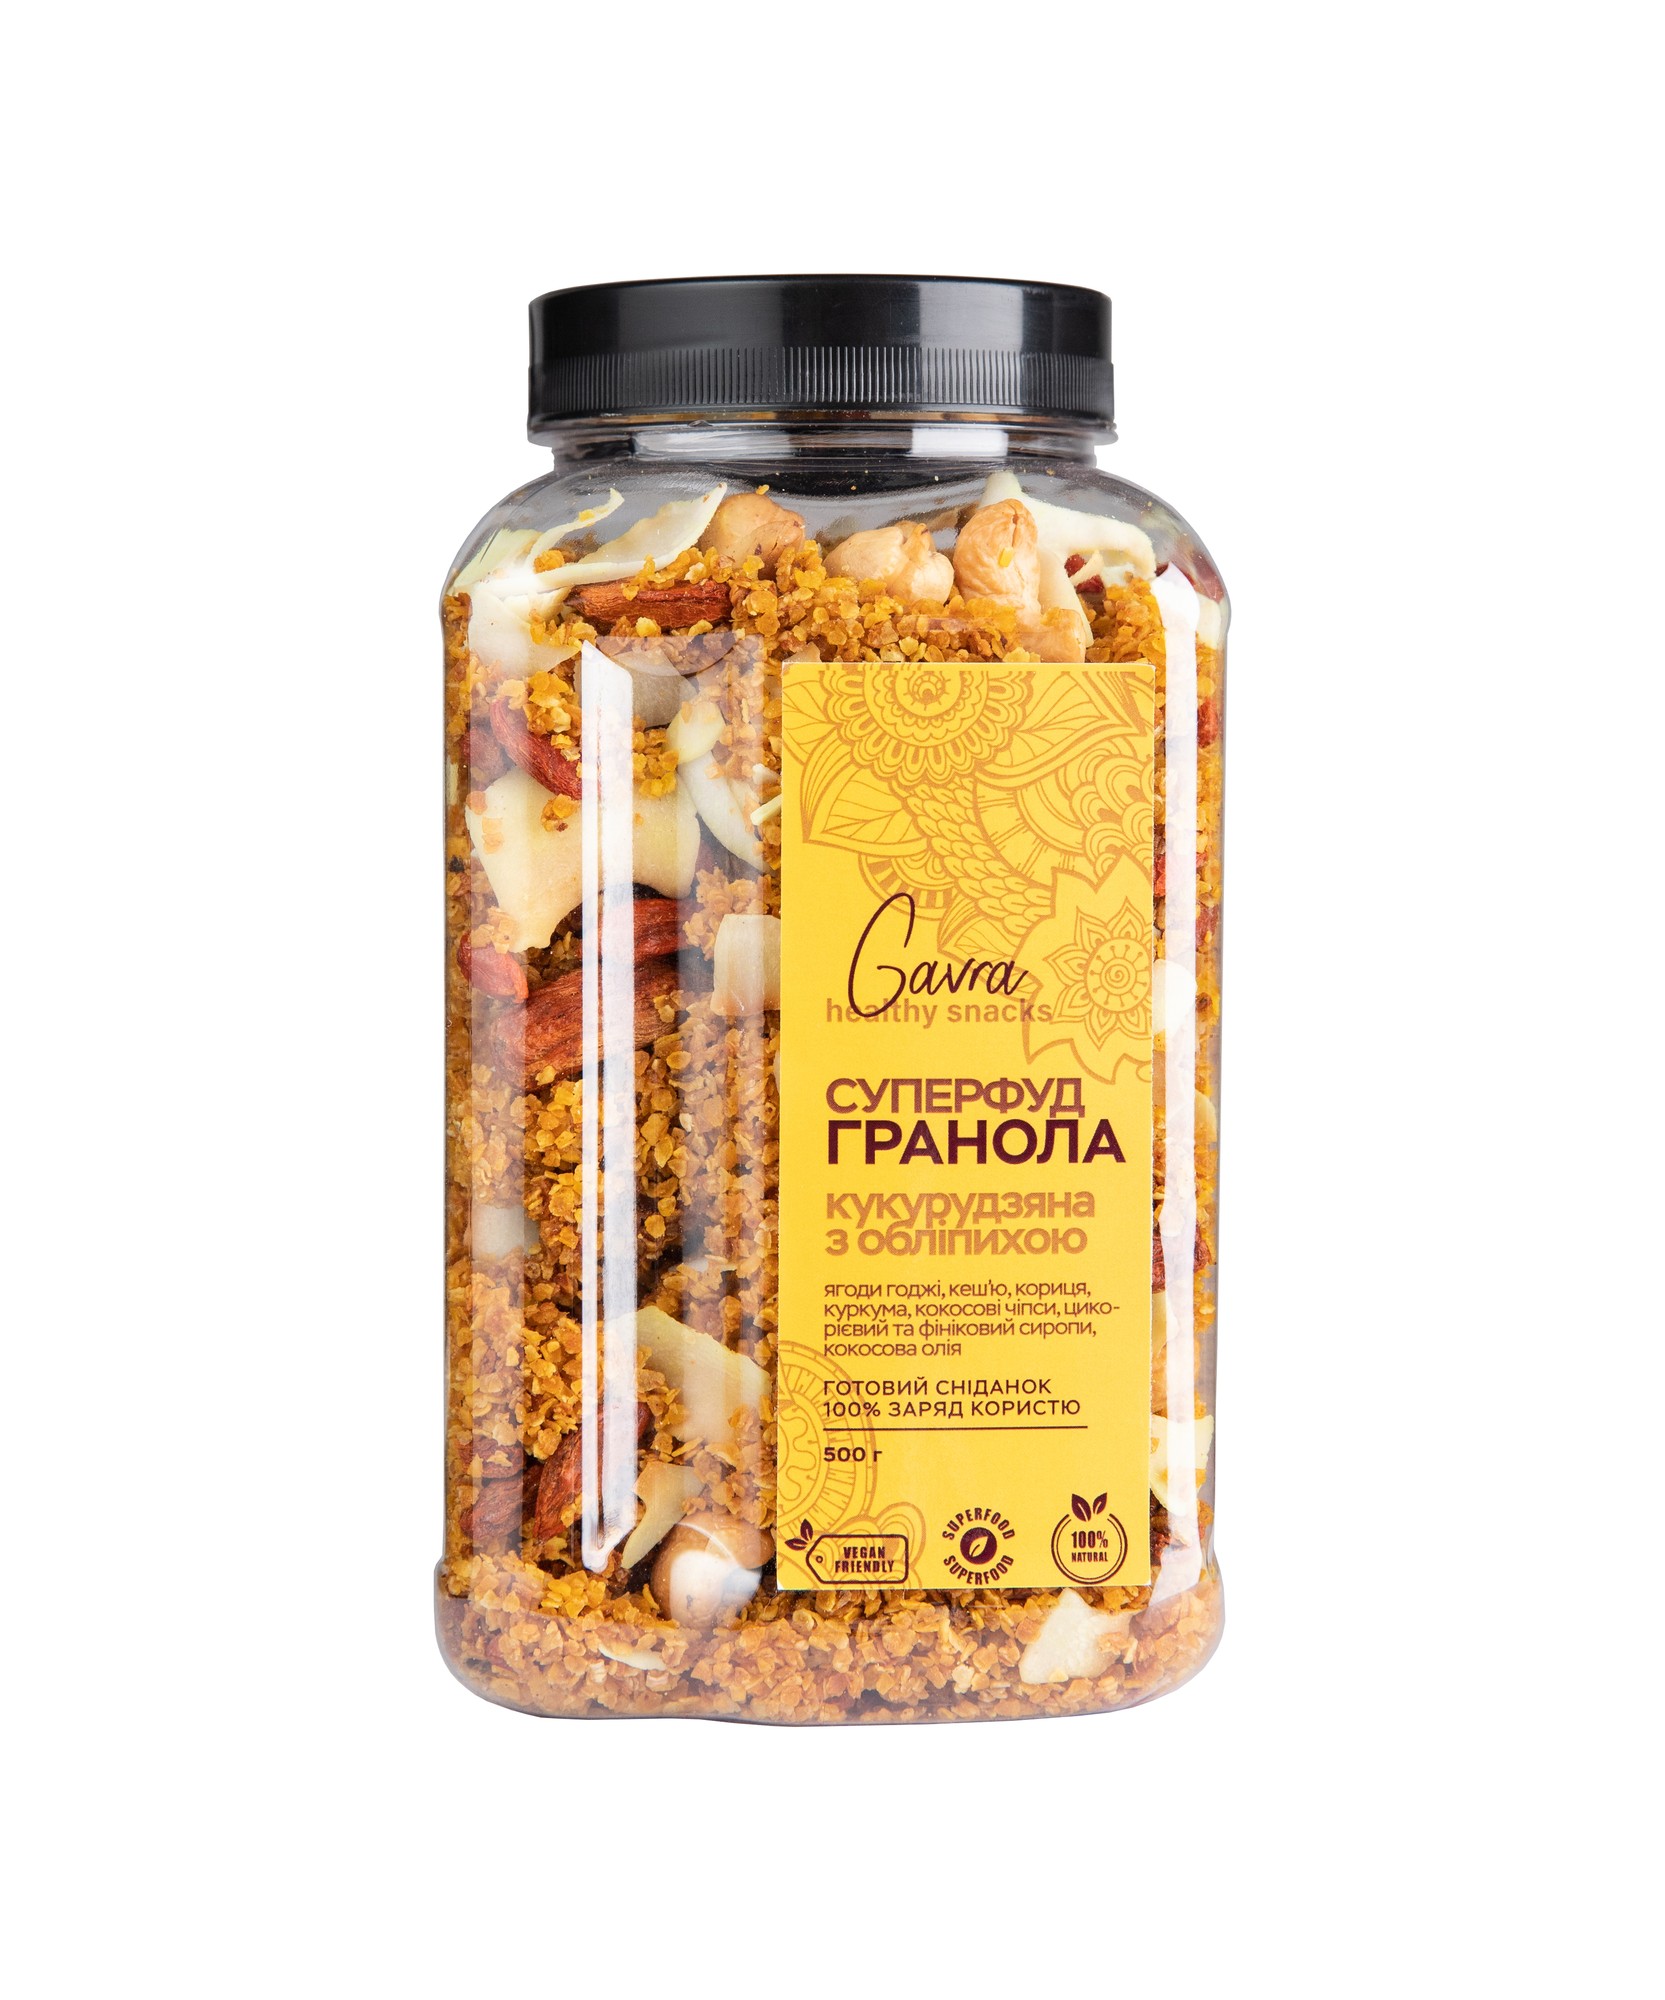 Cornflakes granola with cashew &goji berries 500 g